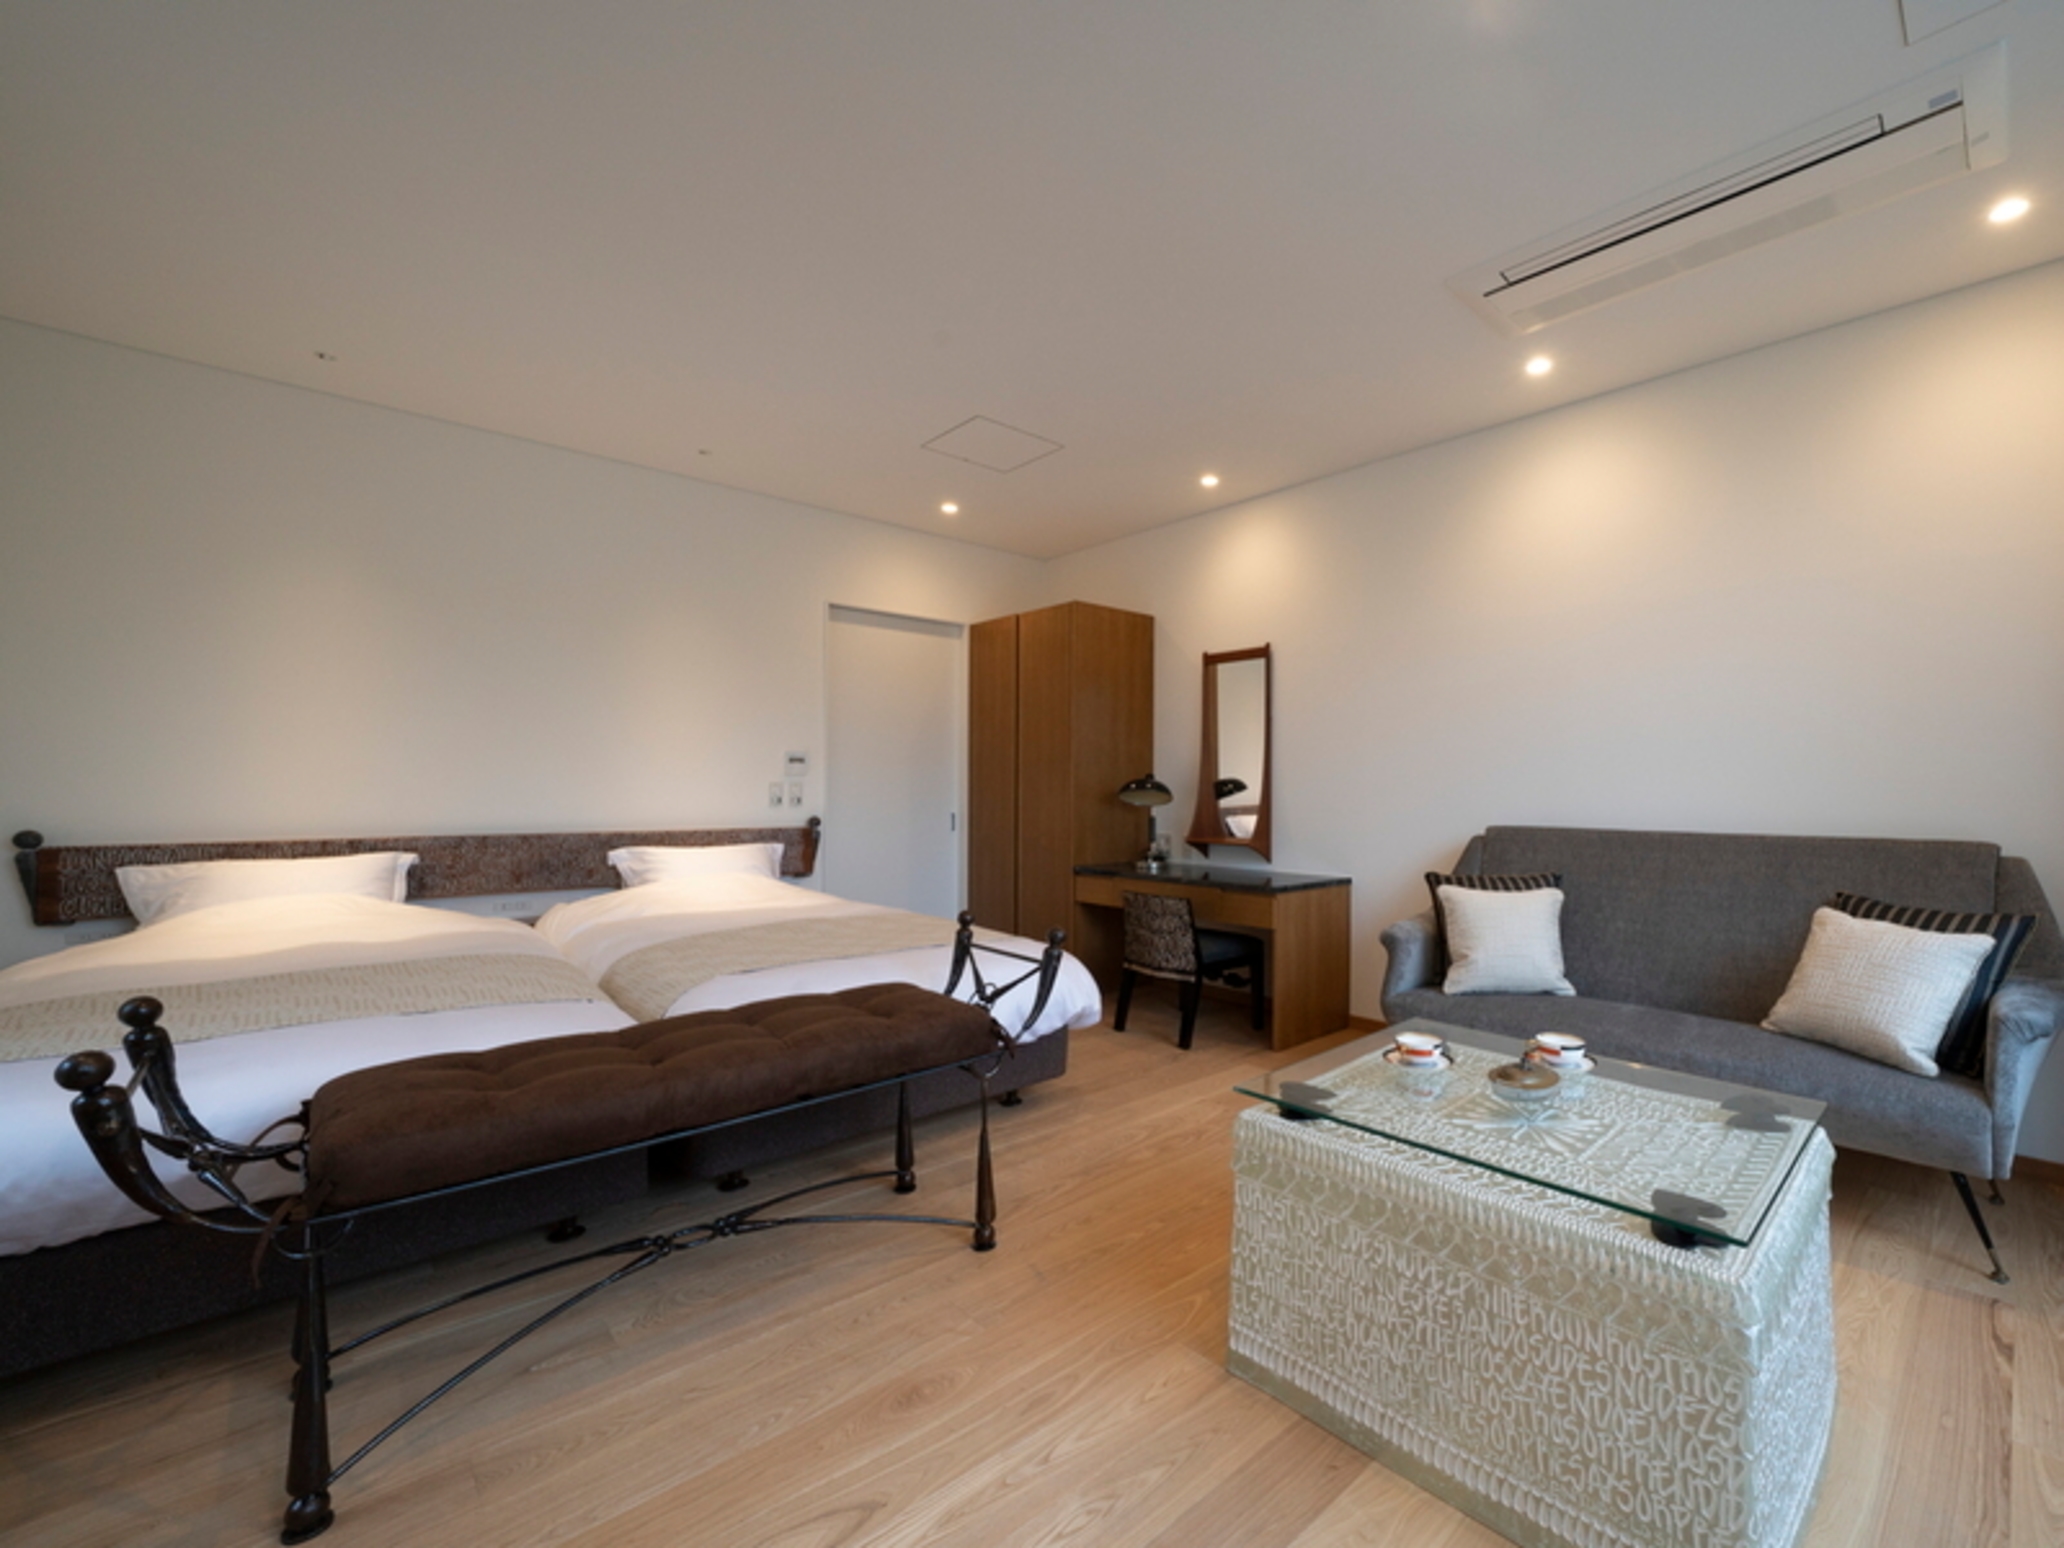 Rooms at Fujinohana Hotel